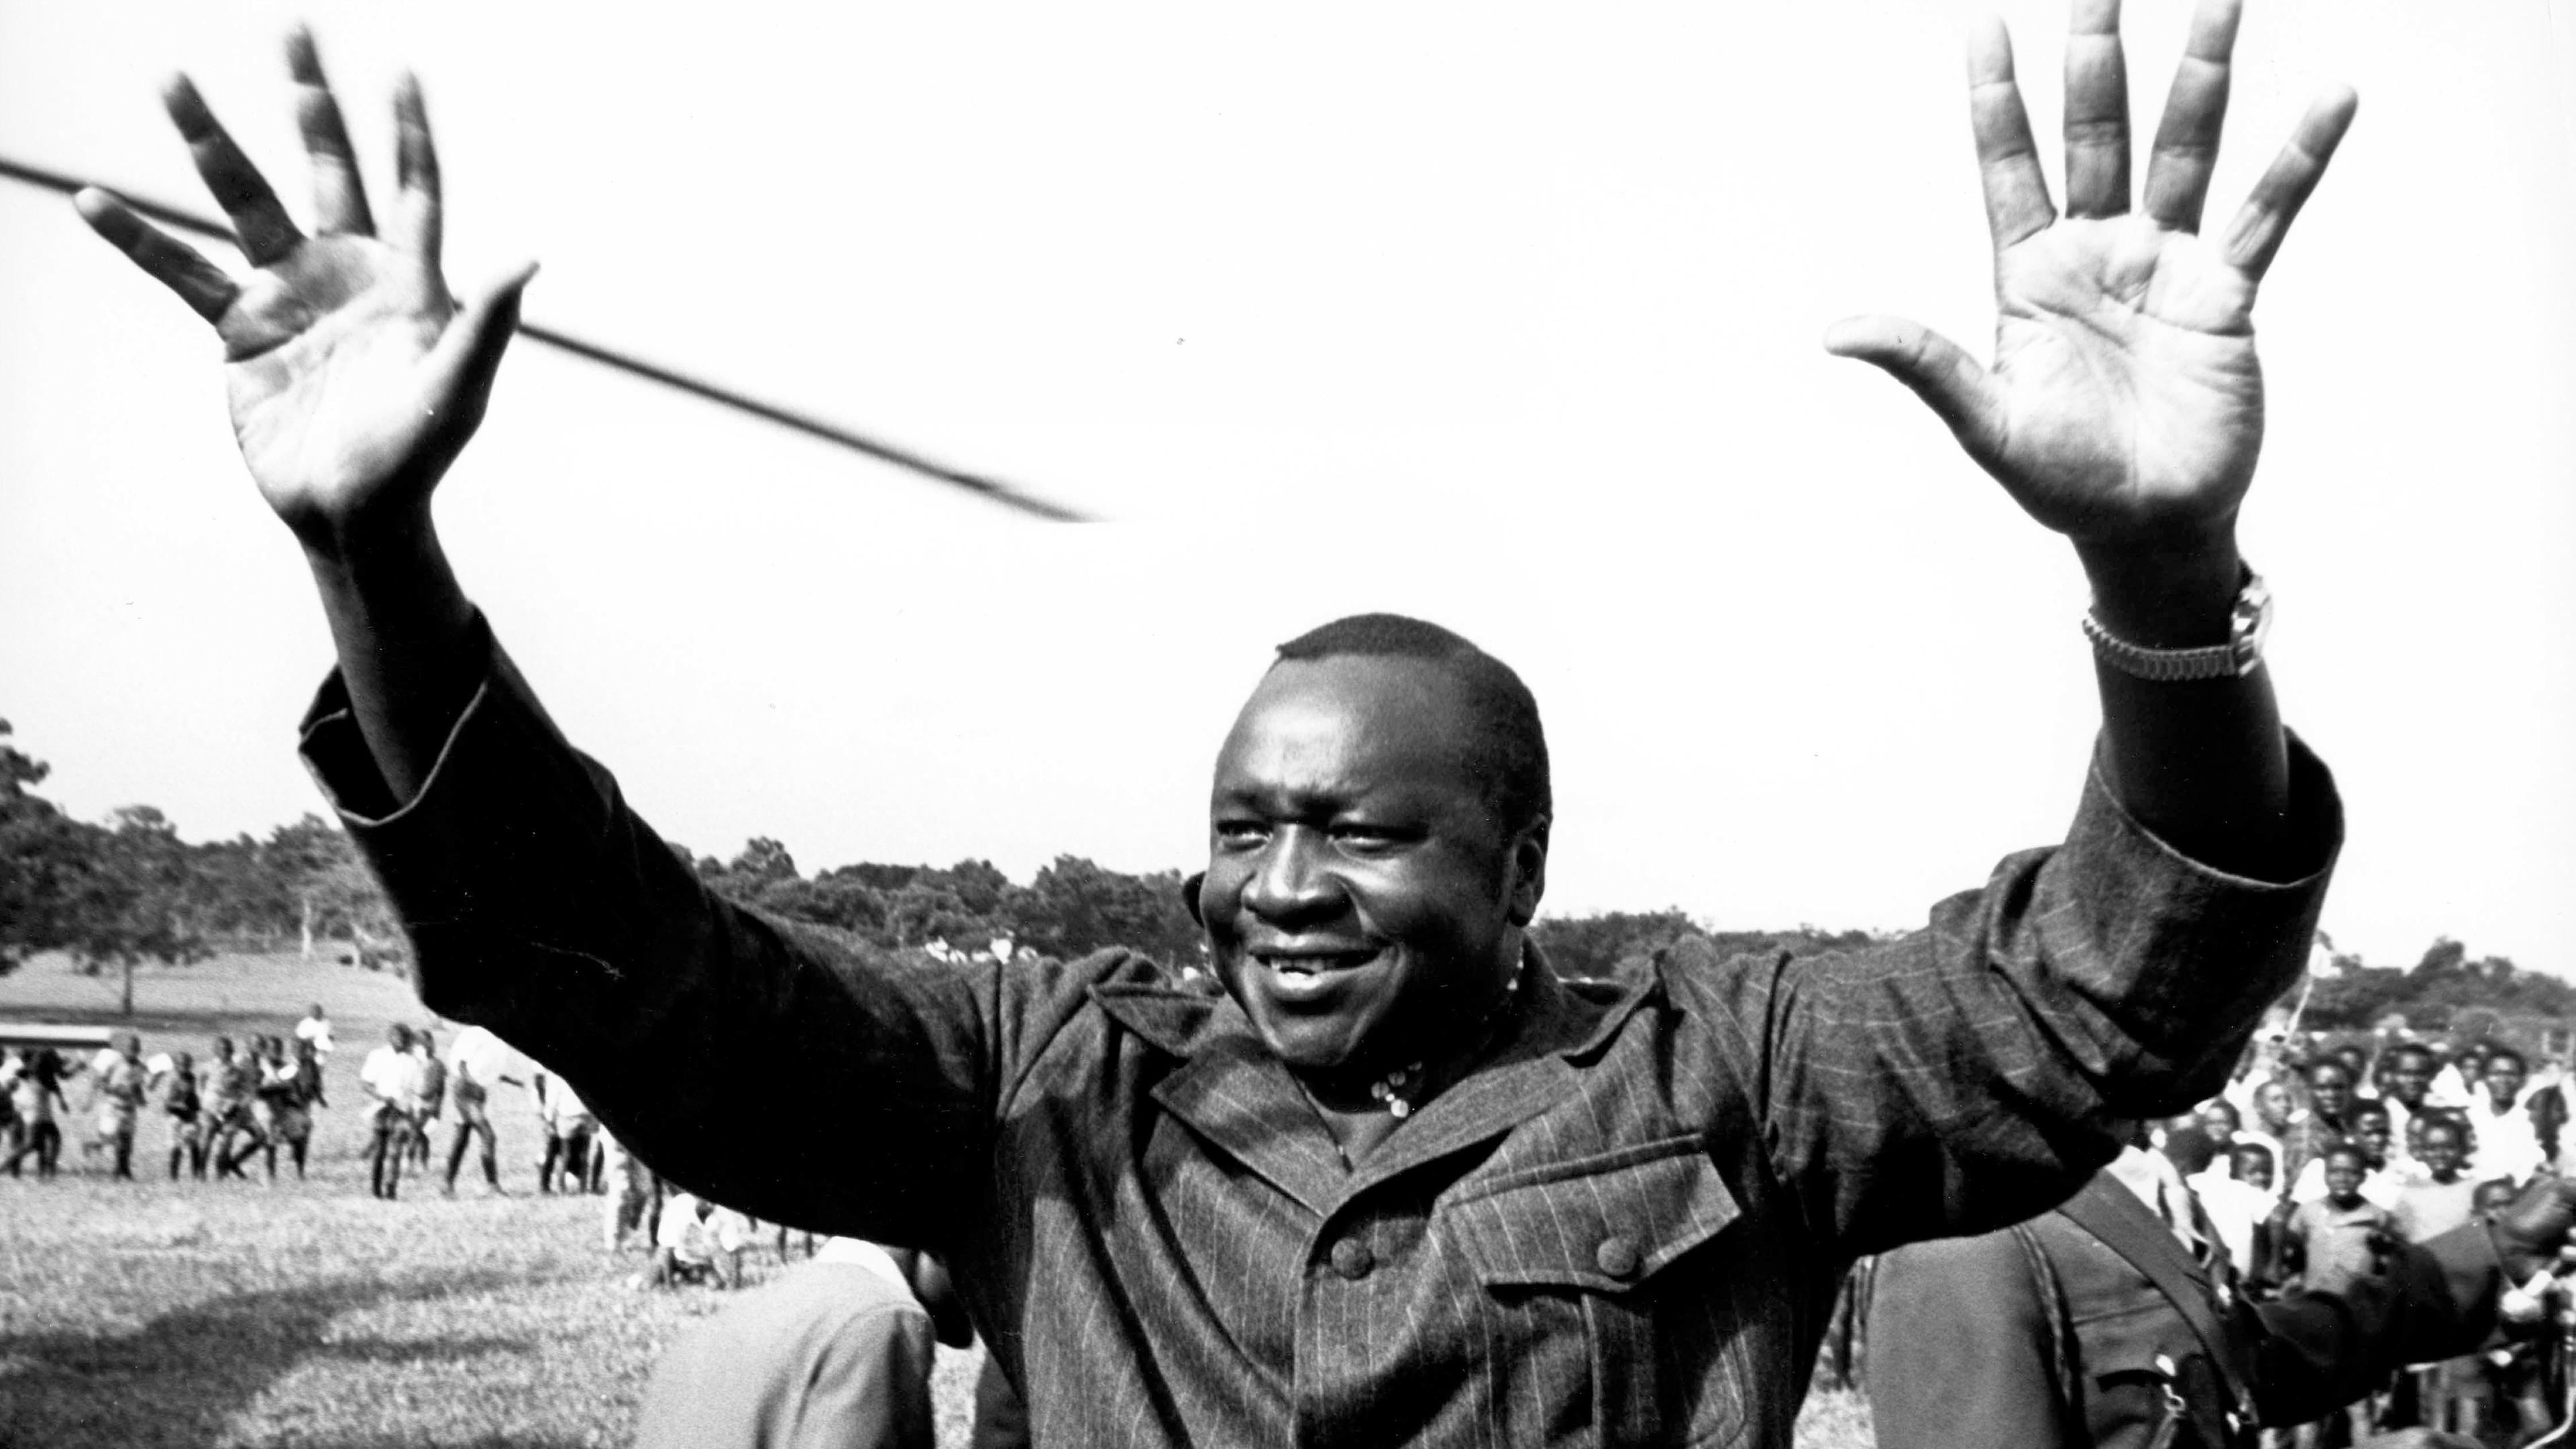 "Bauplan des Bösen: Idi Amin": Schwarz-Weiß-Aufnahme: Ein Mann hat beide Arme erhoben, sodass die Handflächen frontal zu sehen sind. Er lächelt. Im Hintergrund viele versammelt Menschen.